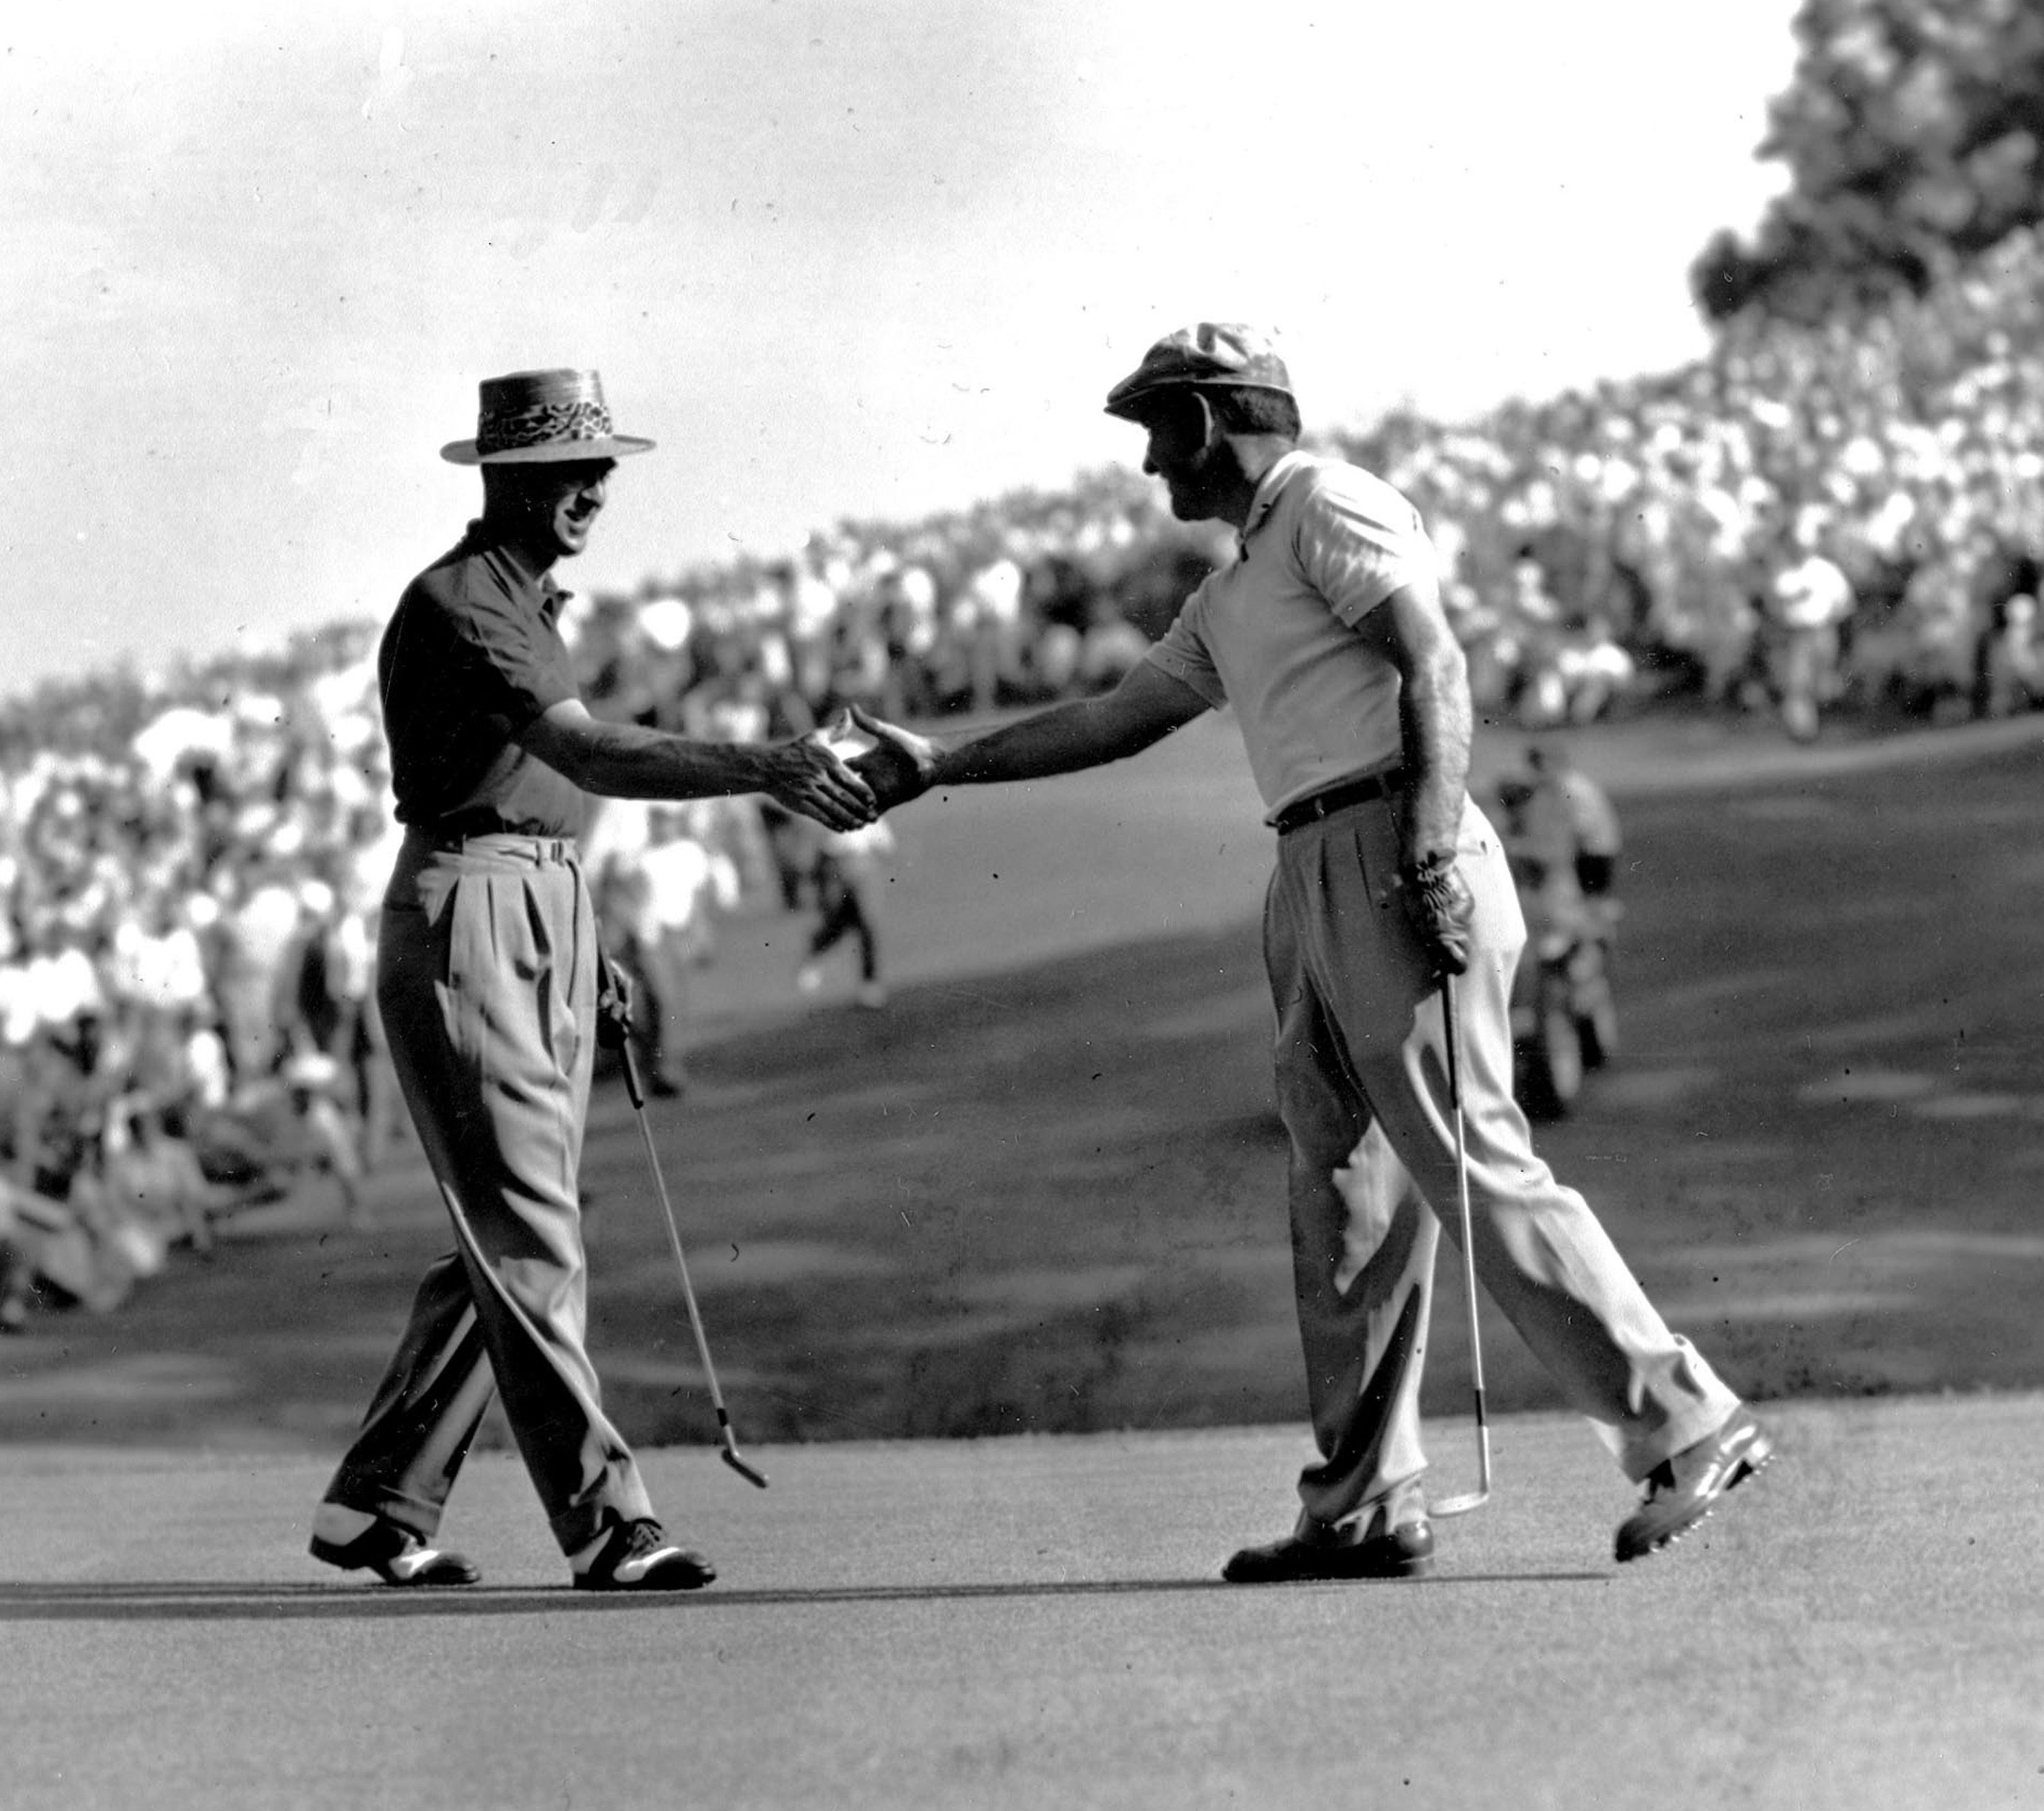 PGA CHAMPIONSHIP '24: Looking back at Tiger Woods and key anniversaries